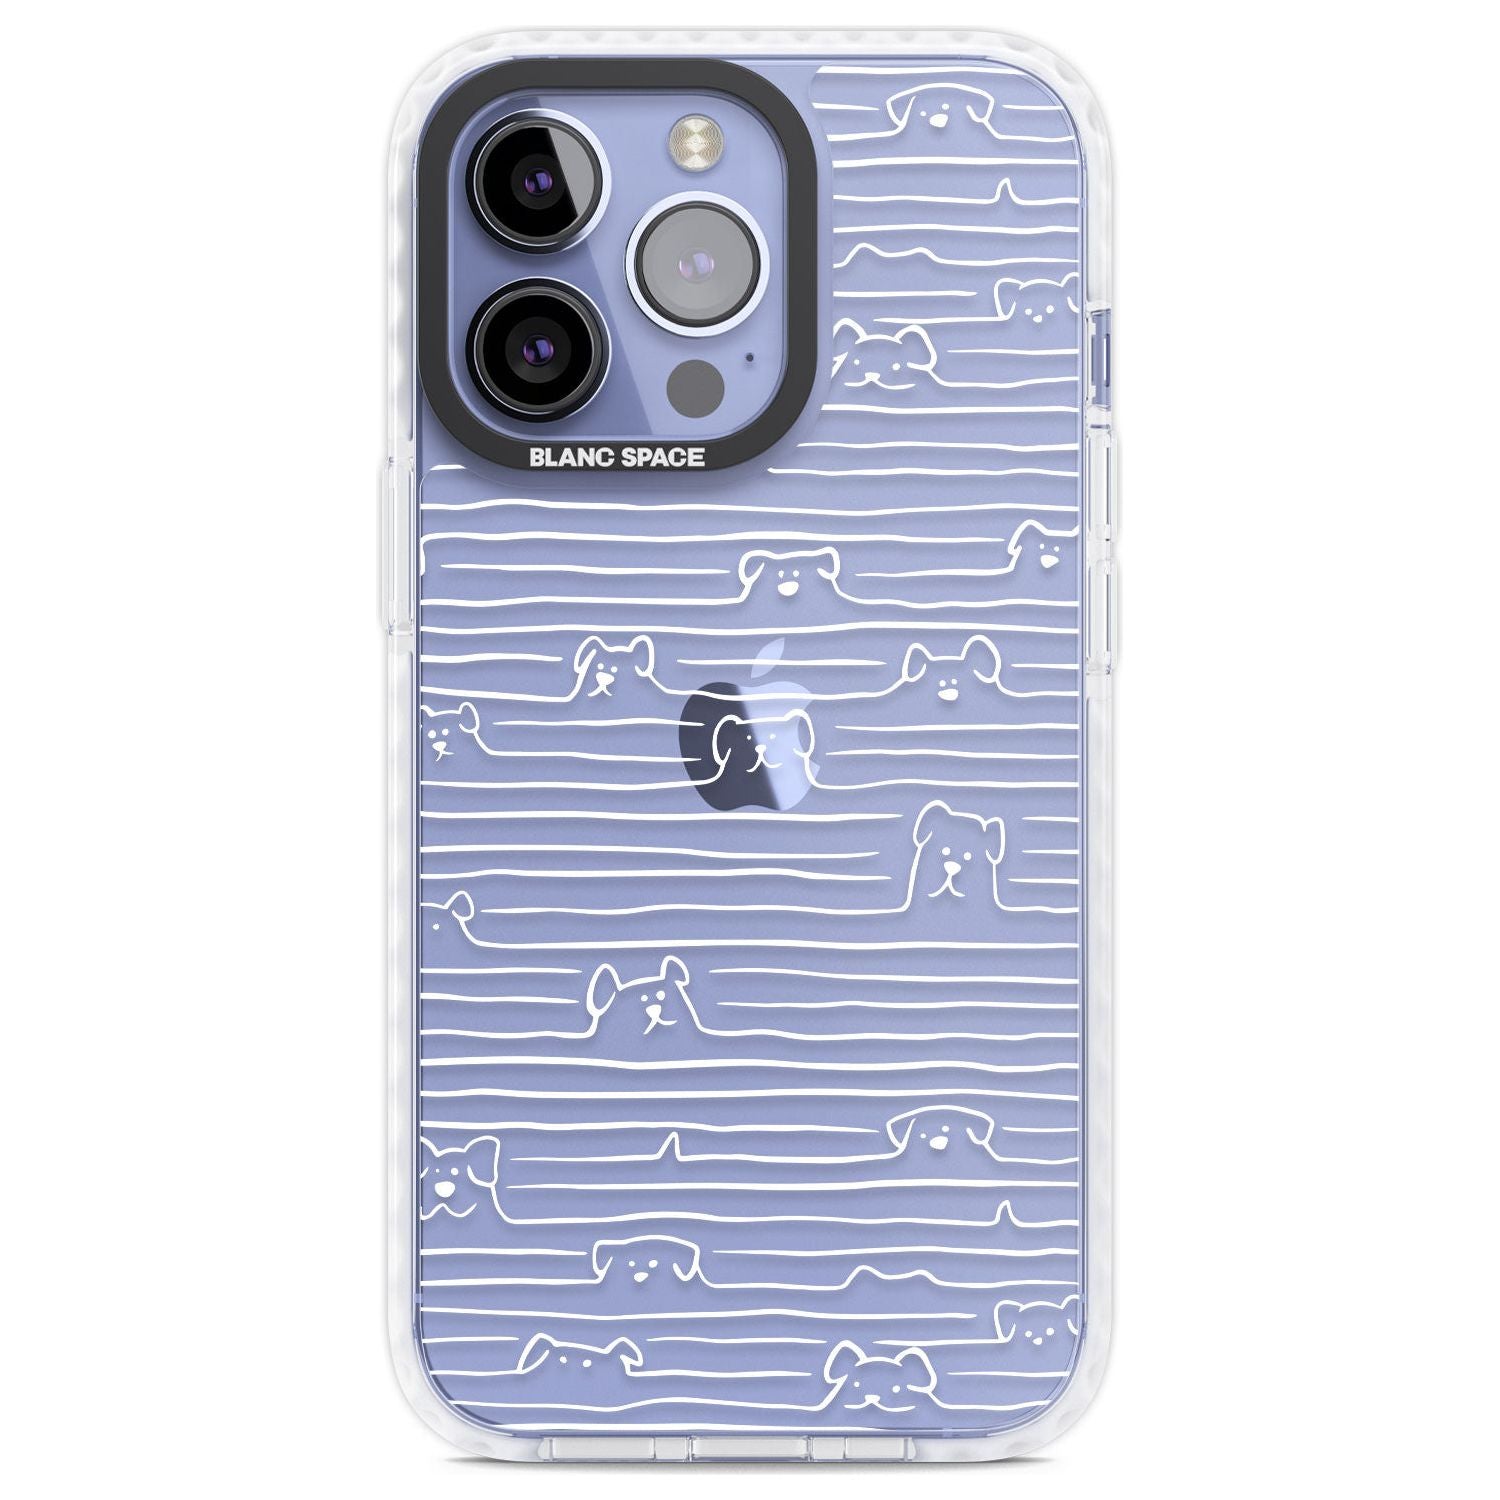 Dog Line Art - White Phone Case iPhone 13 Pro / Impact Case,iPhone 14 Pro / Impact Case,iPhone 15 Pro Max / Impact Case,iPhone 15 Pro / Impact Case Blanc Space